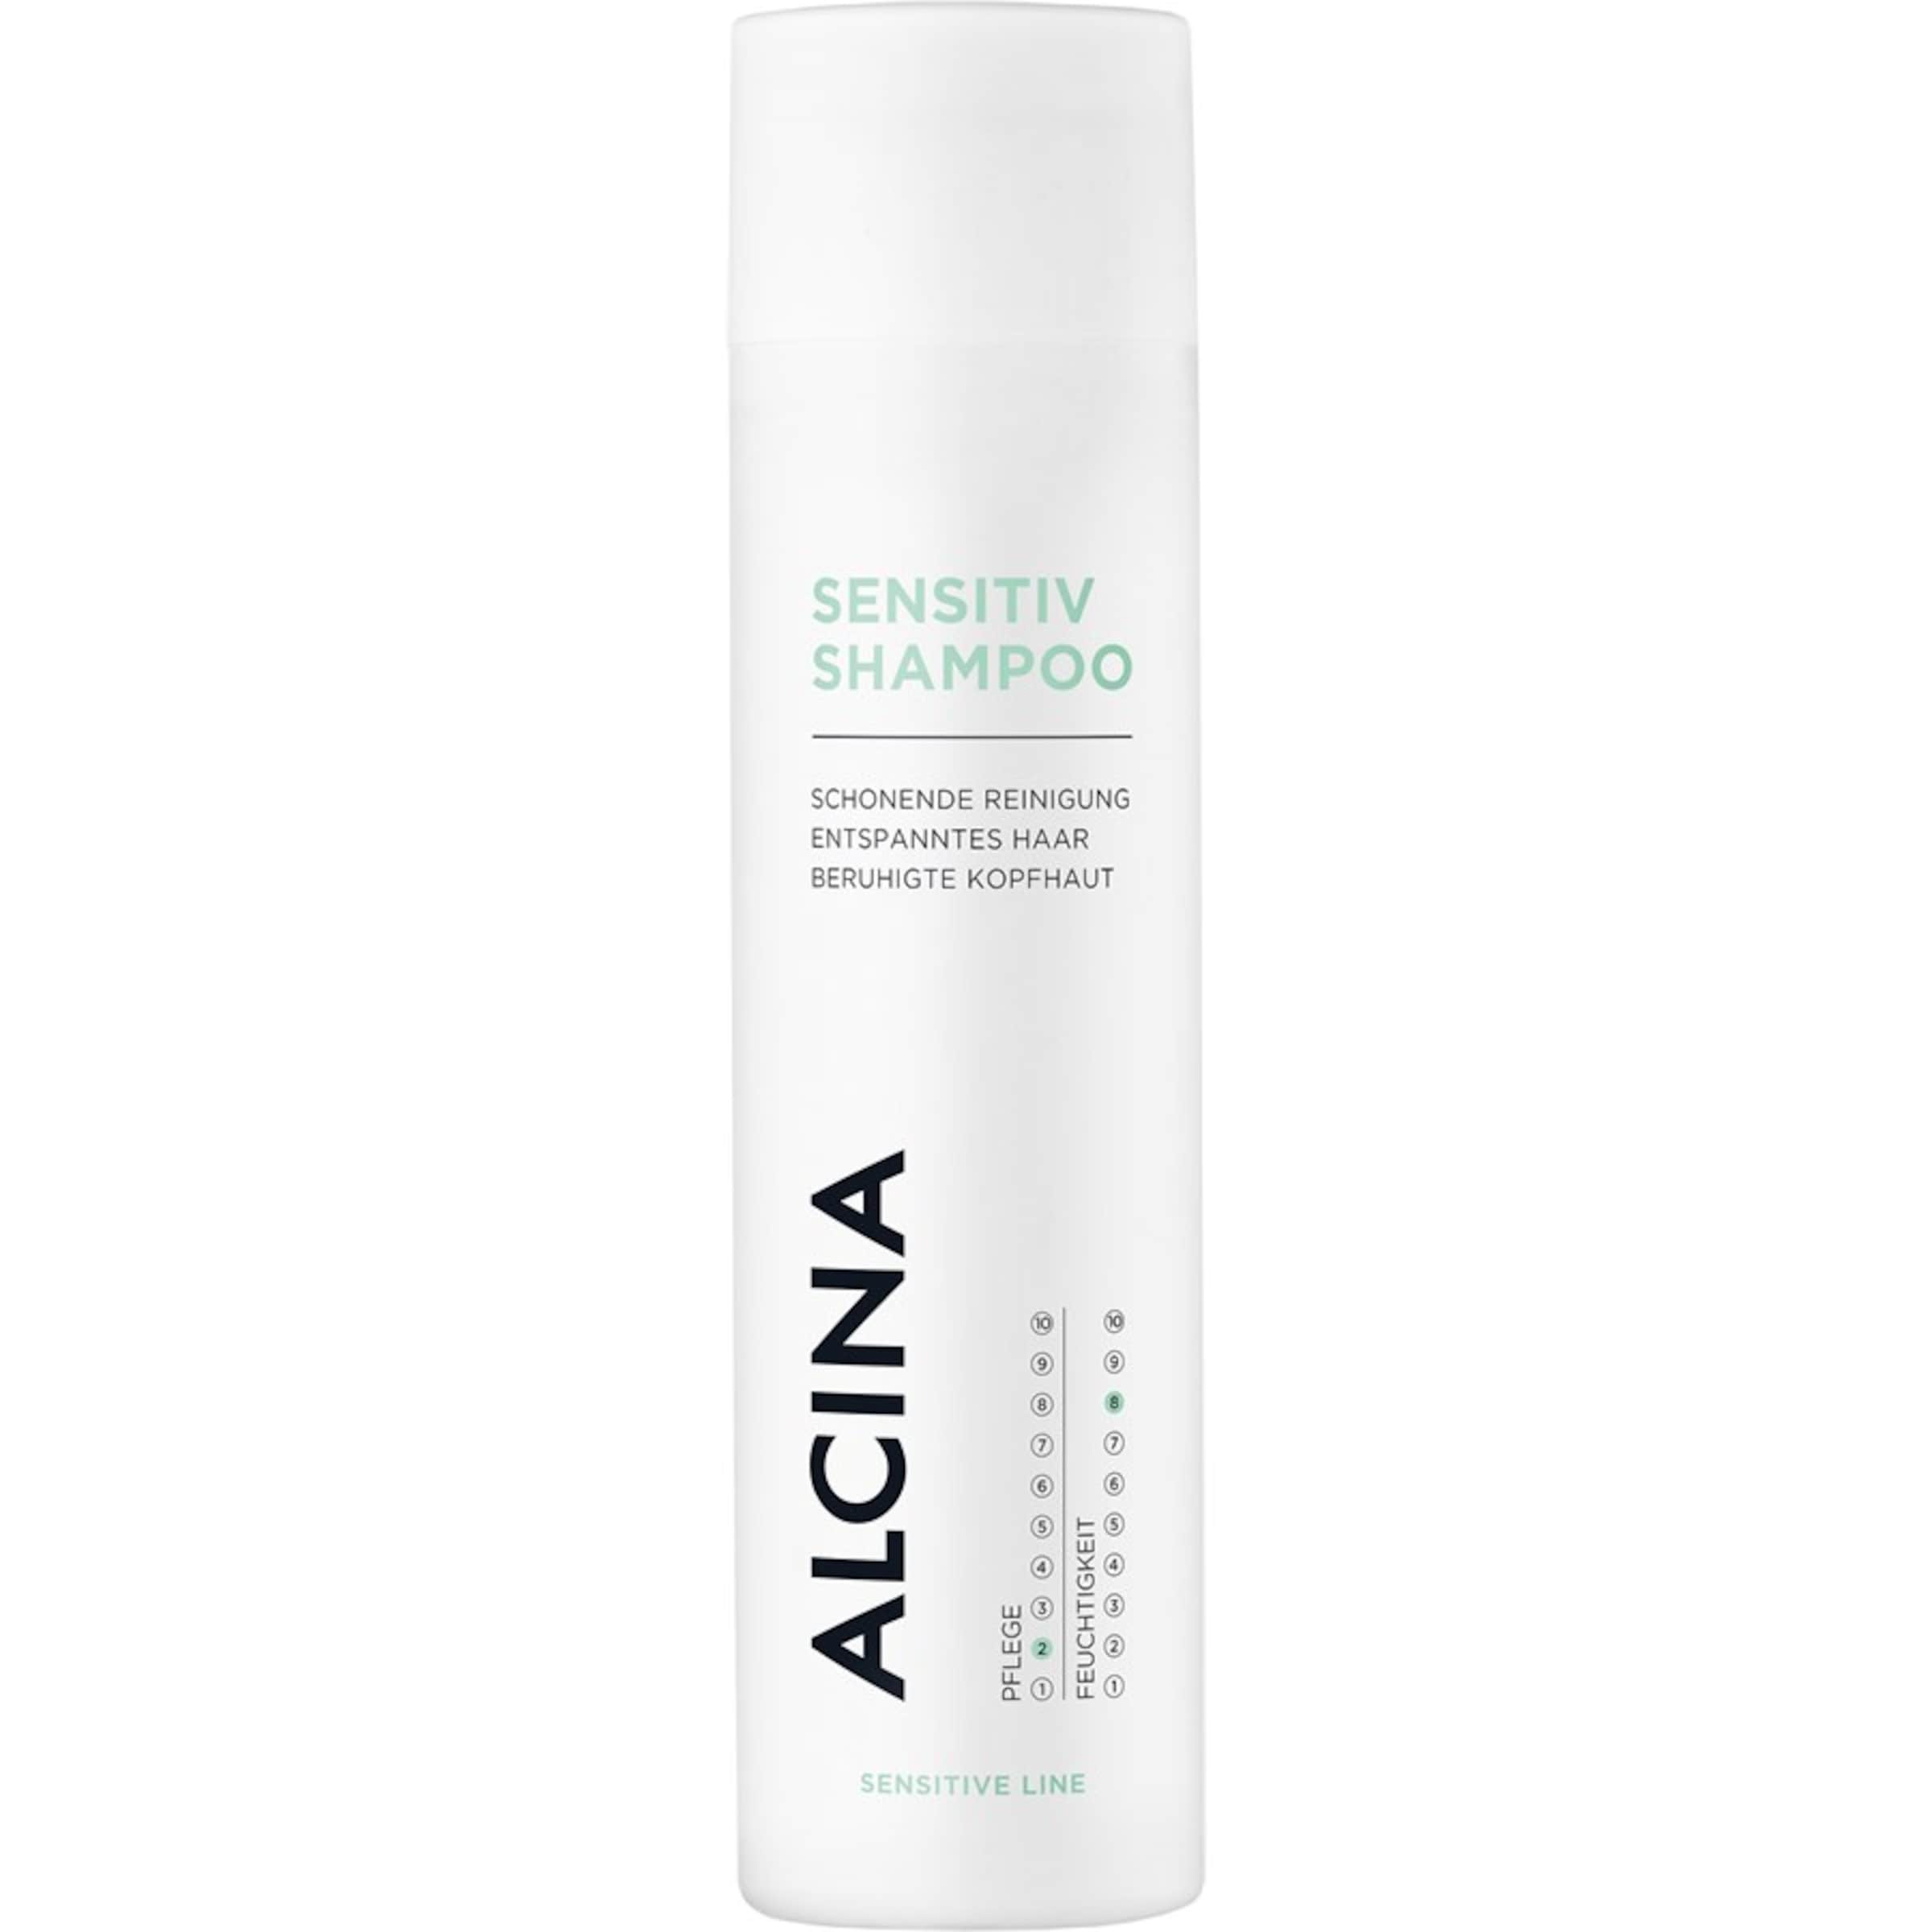 Alcina Shampoo Sensitiv in 